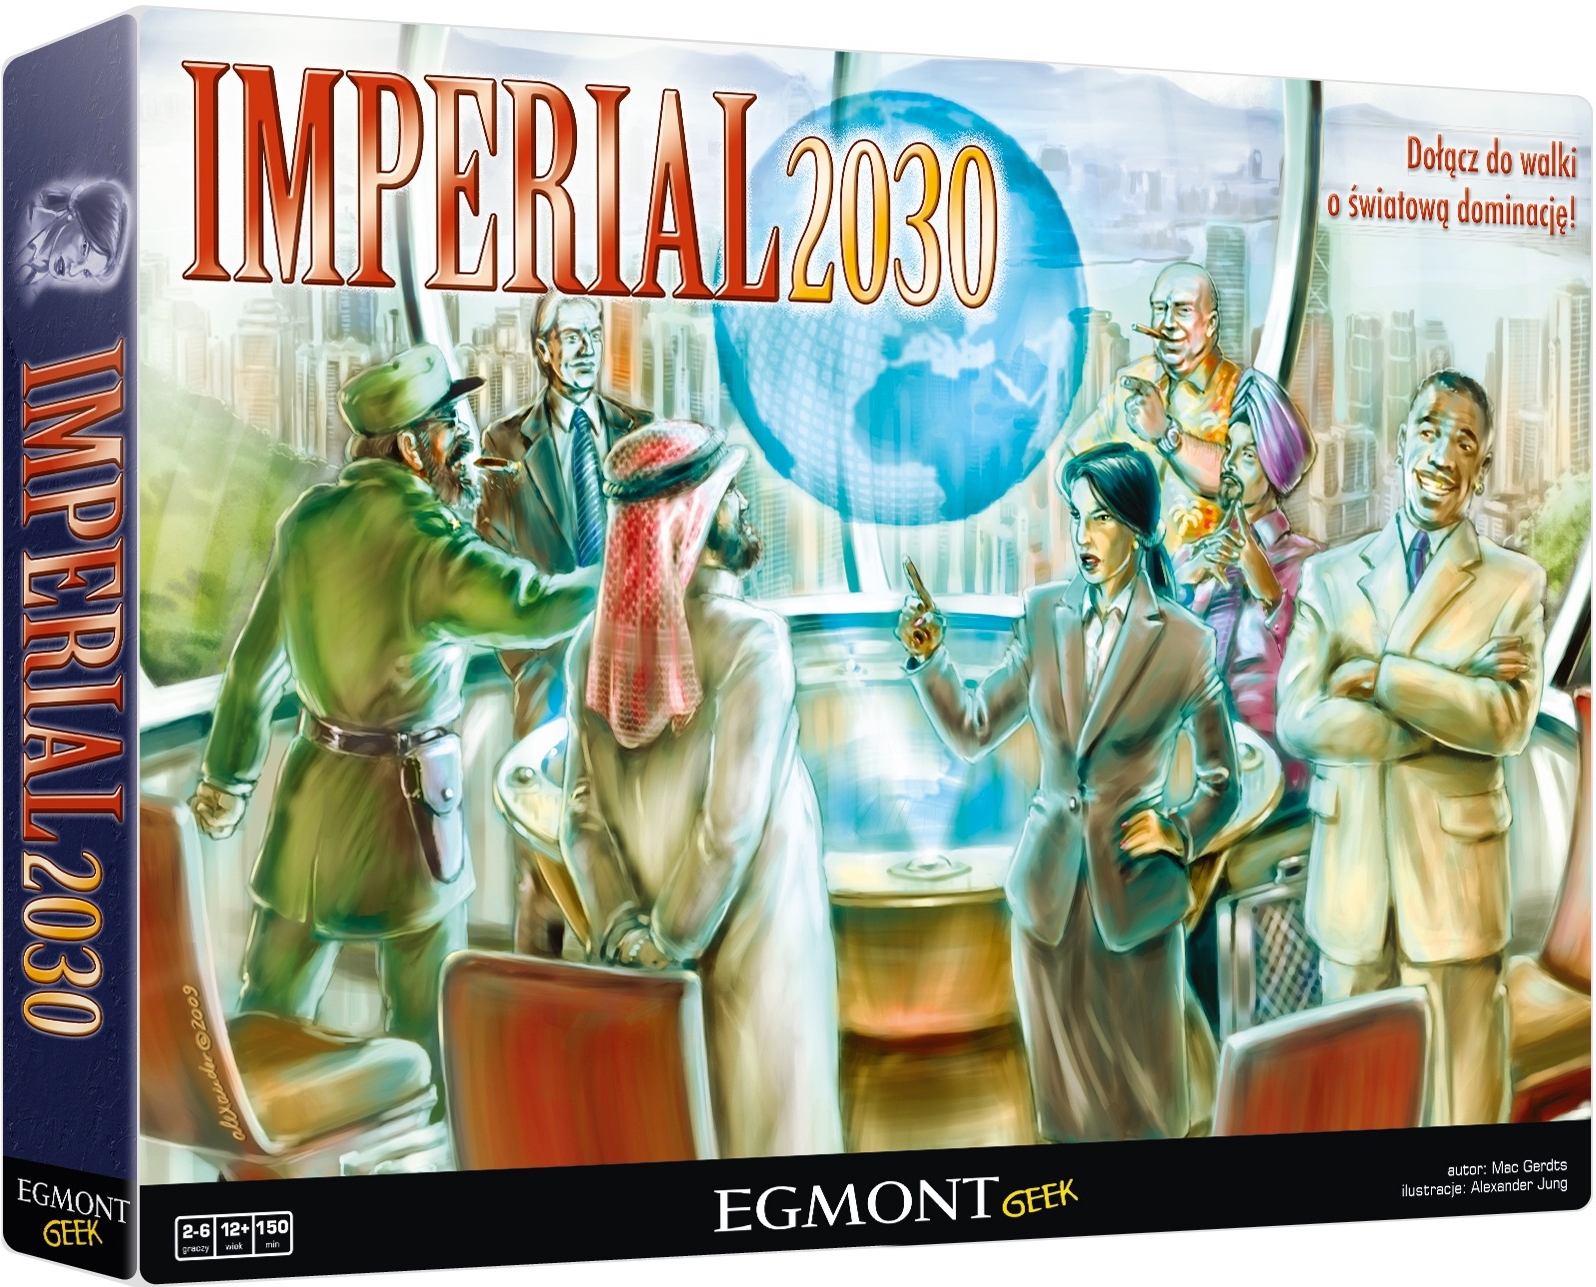 Okładka gry planszowej Imperial 2030 wydawnictwa Egmont